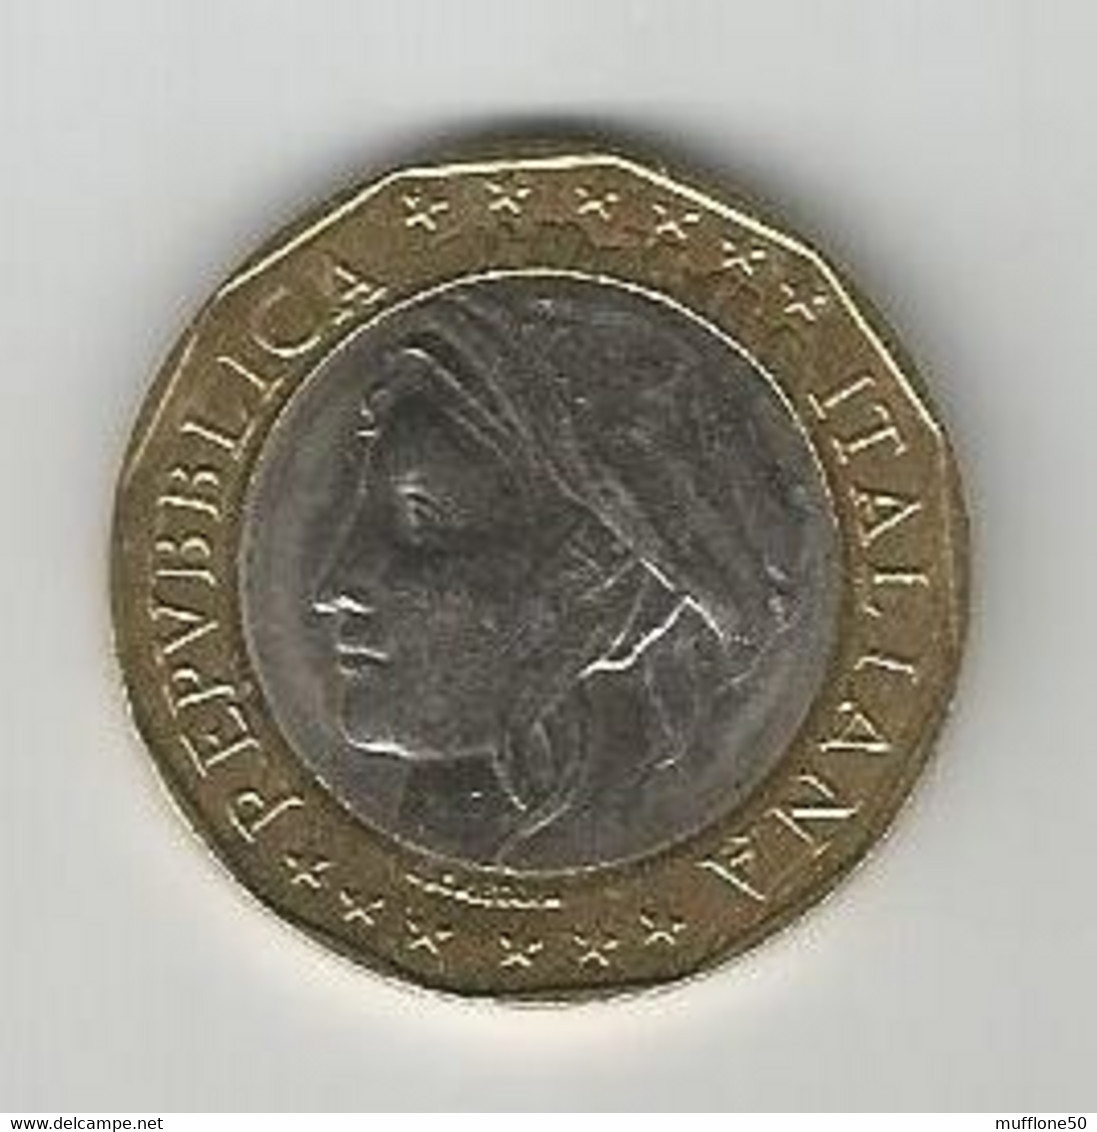 Italia. Moneta Da 1.000 Lire Del 1997 - Errore Di Conio, Germania Ancora Divisa. - Collections